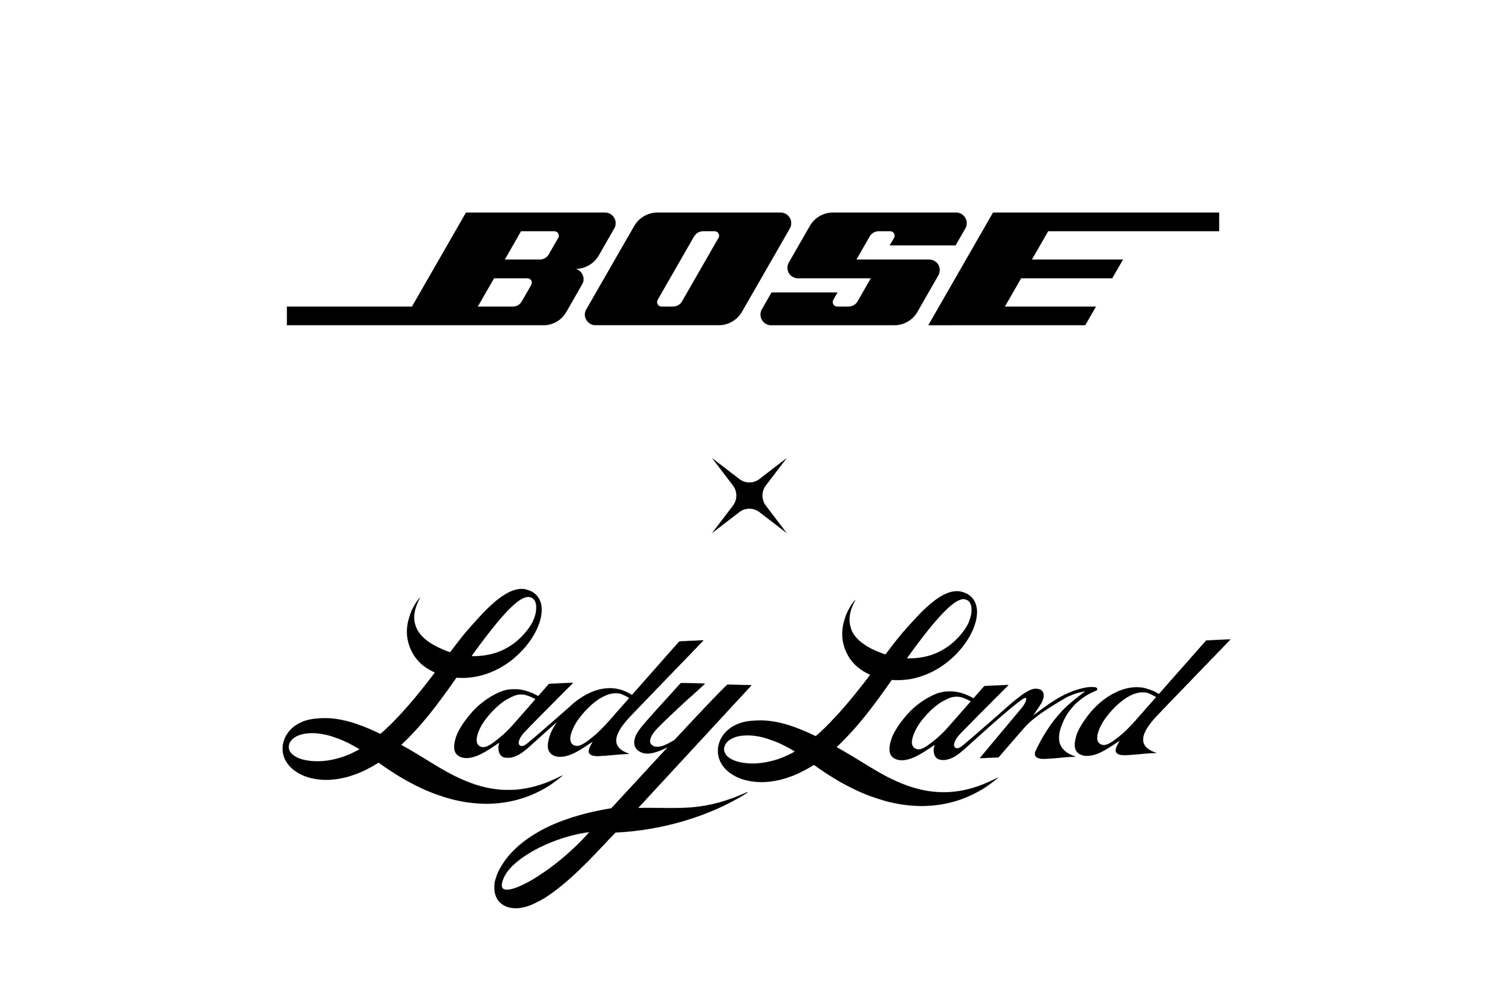 Bose x Ladyland